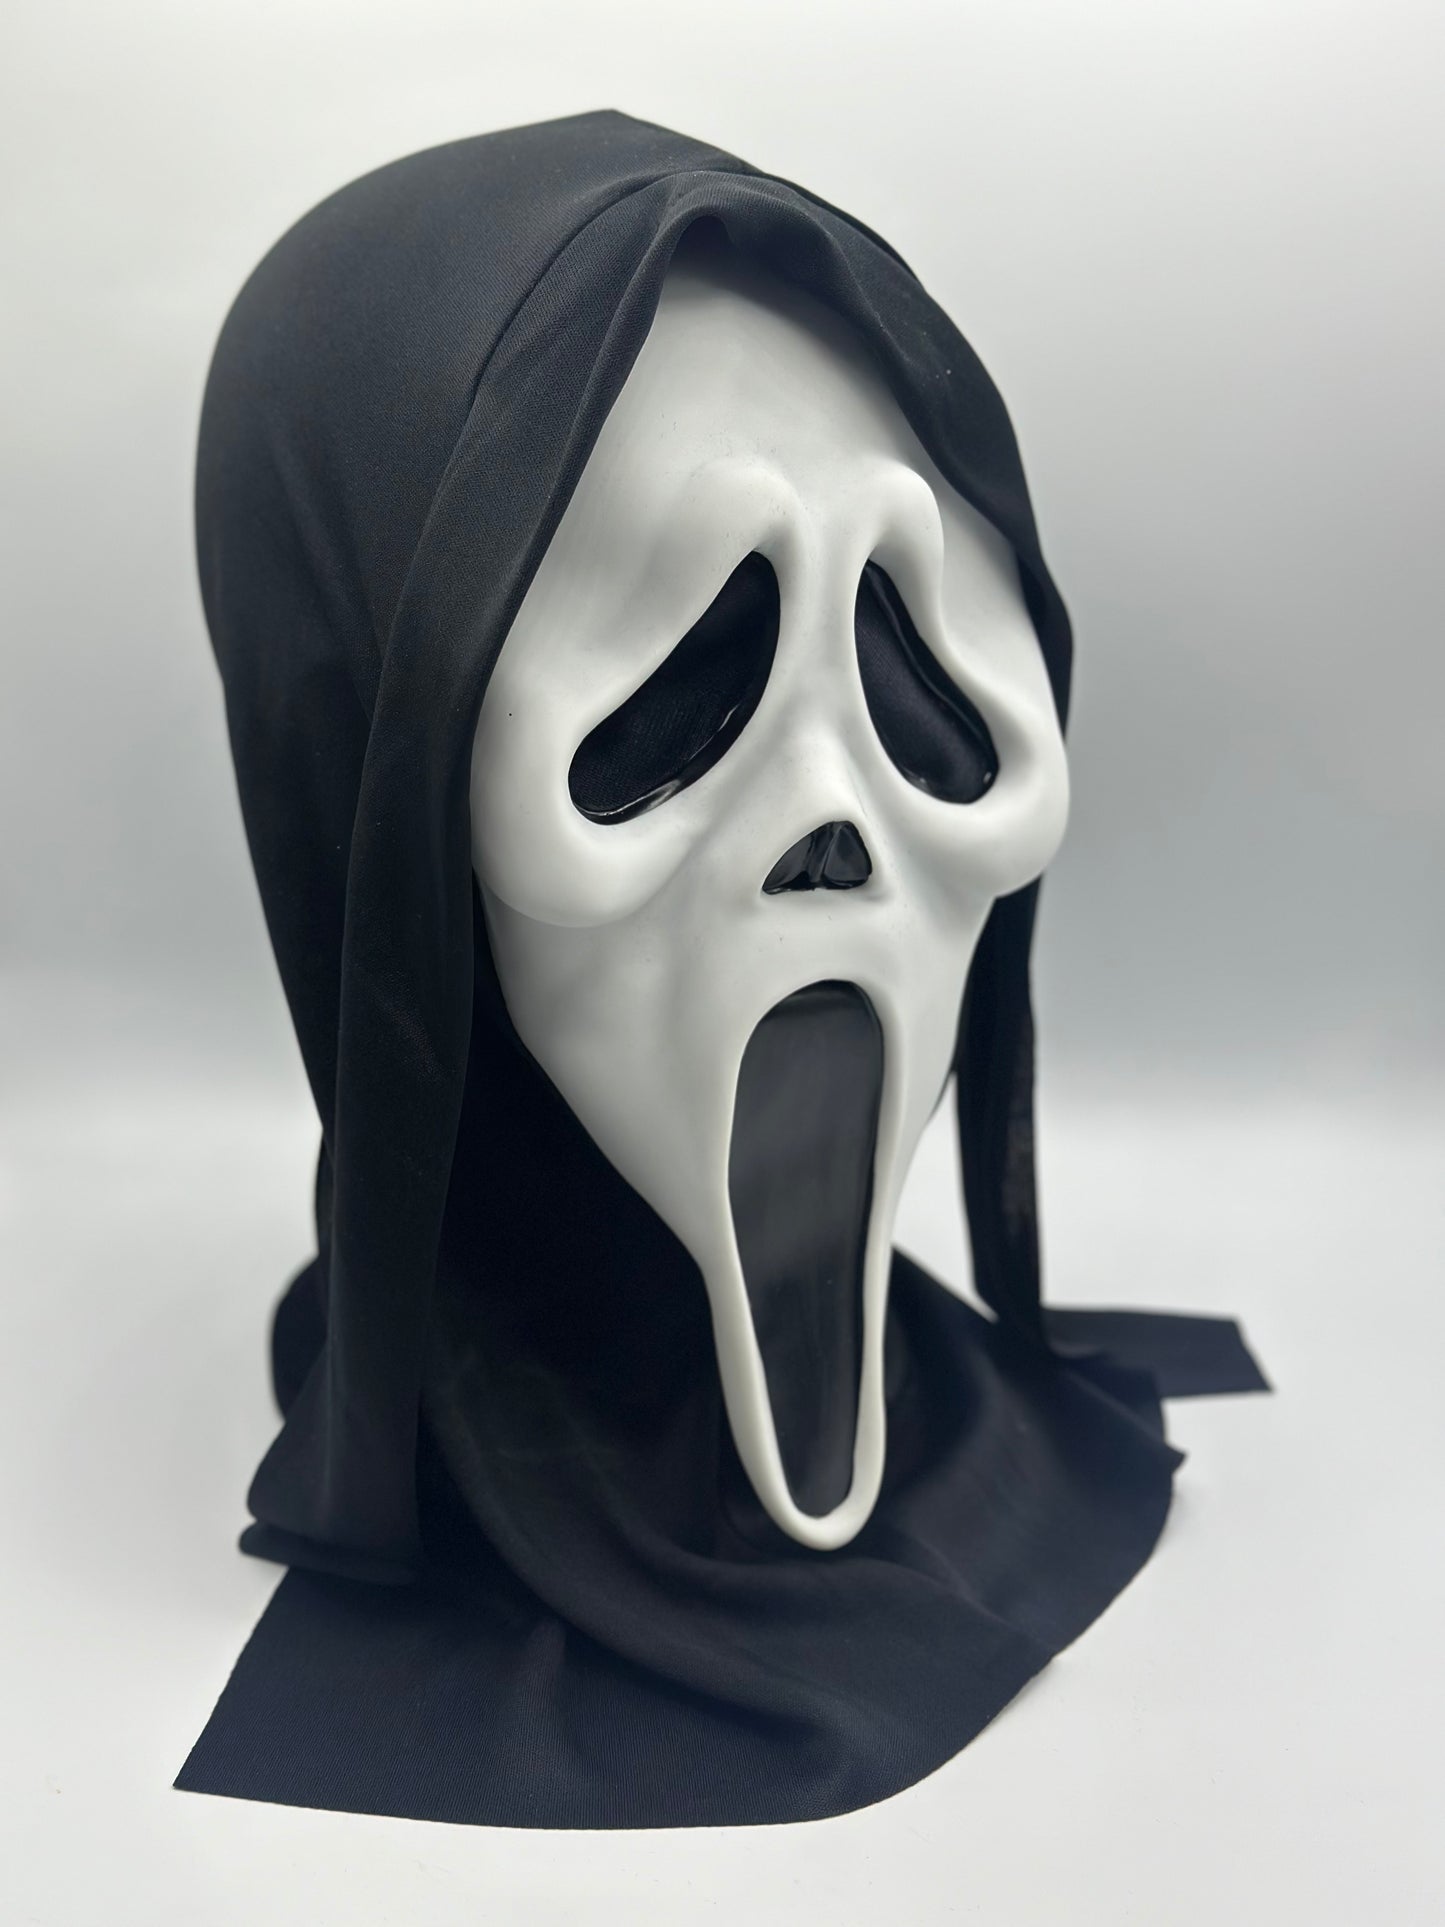 Scream-Maske, Ghostface-Maske aus dem Scream-Film